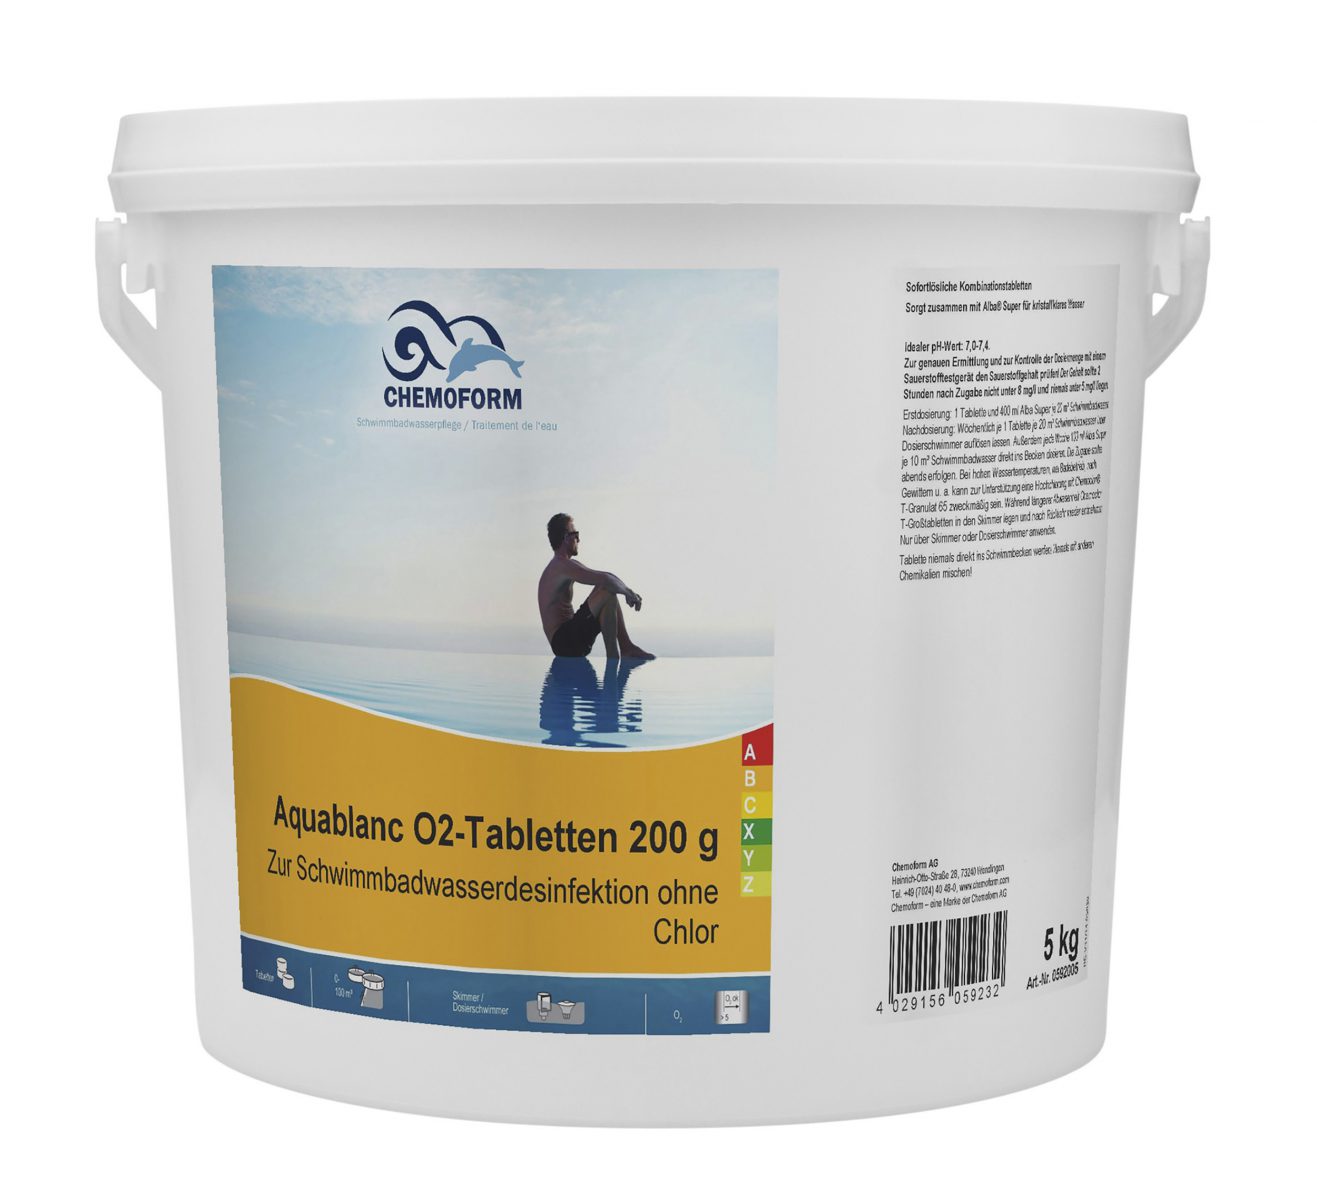 Активный кислород в таблетках для дезинфекции воды в бассейнах Аквабланк О2 (200 г), 5 кг